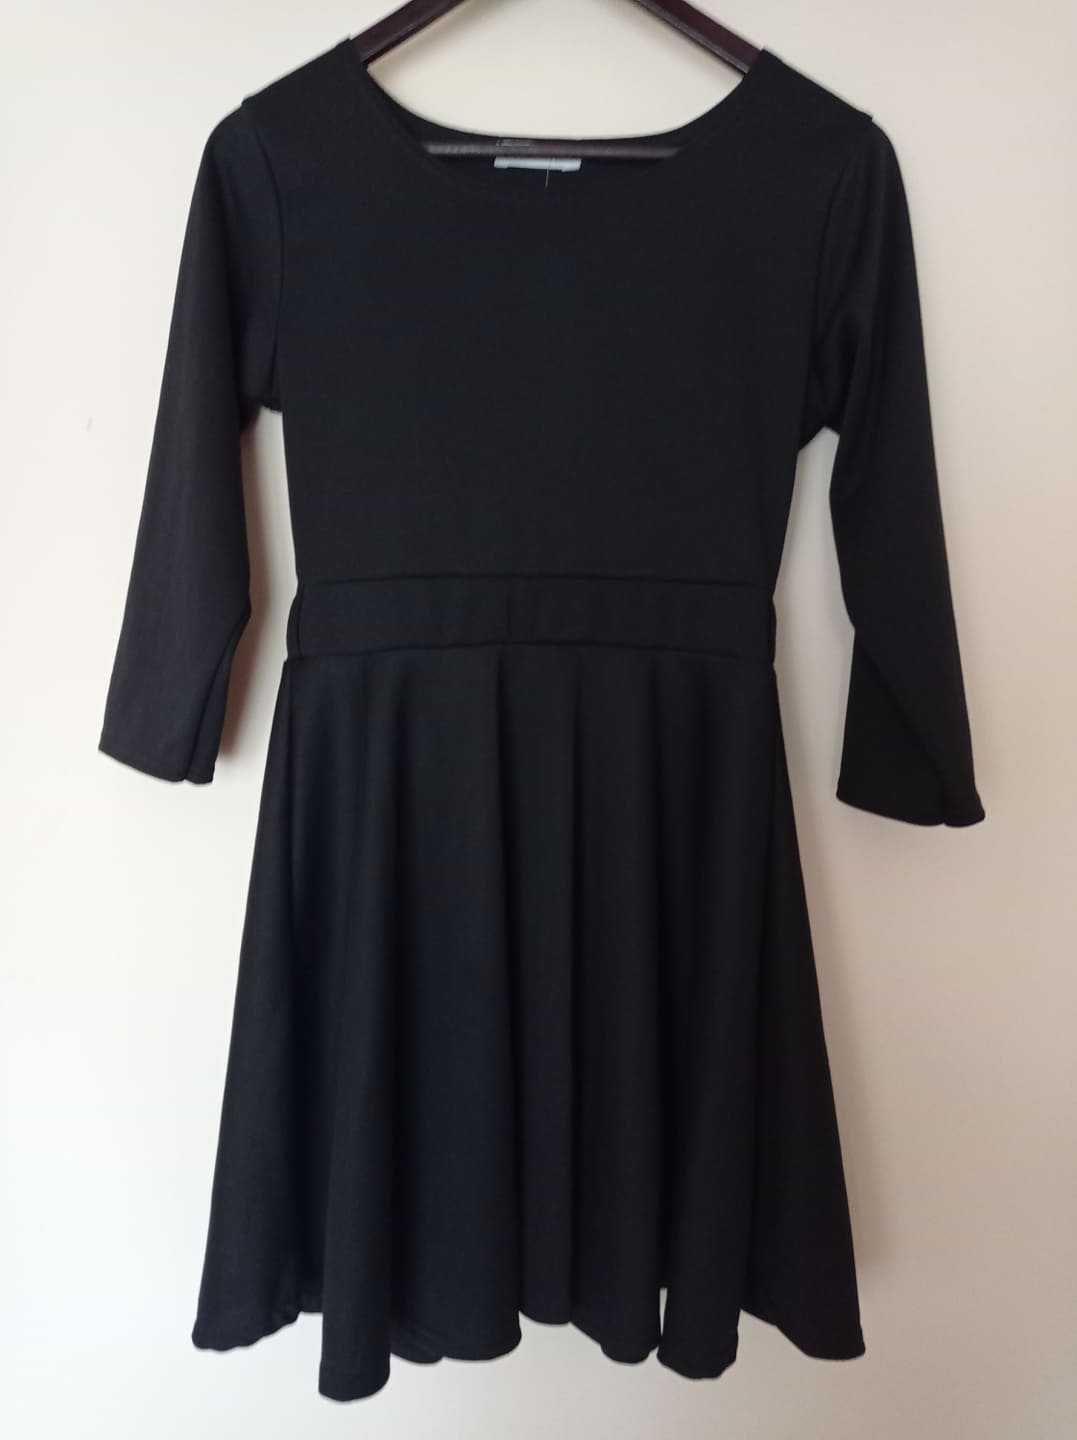 Nowa, czarna sukienka